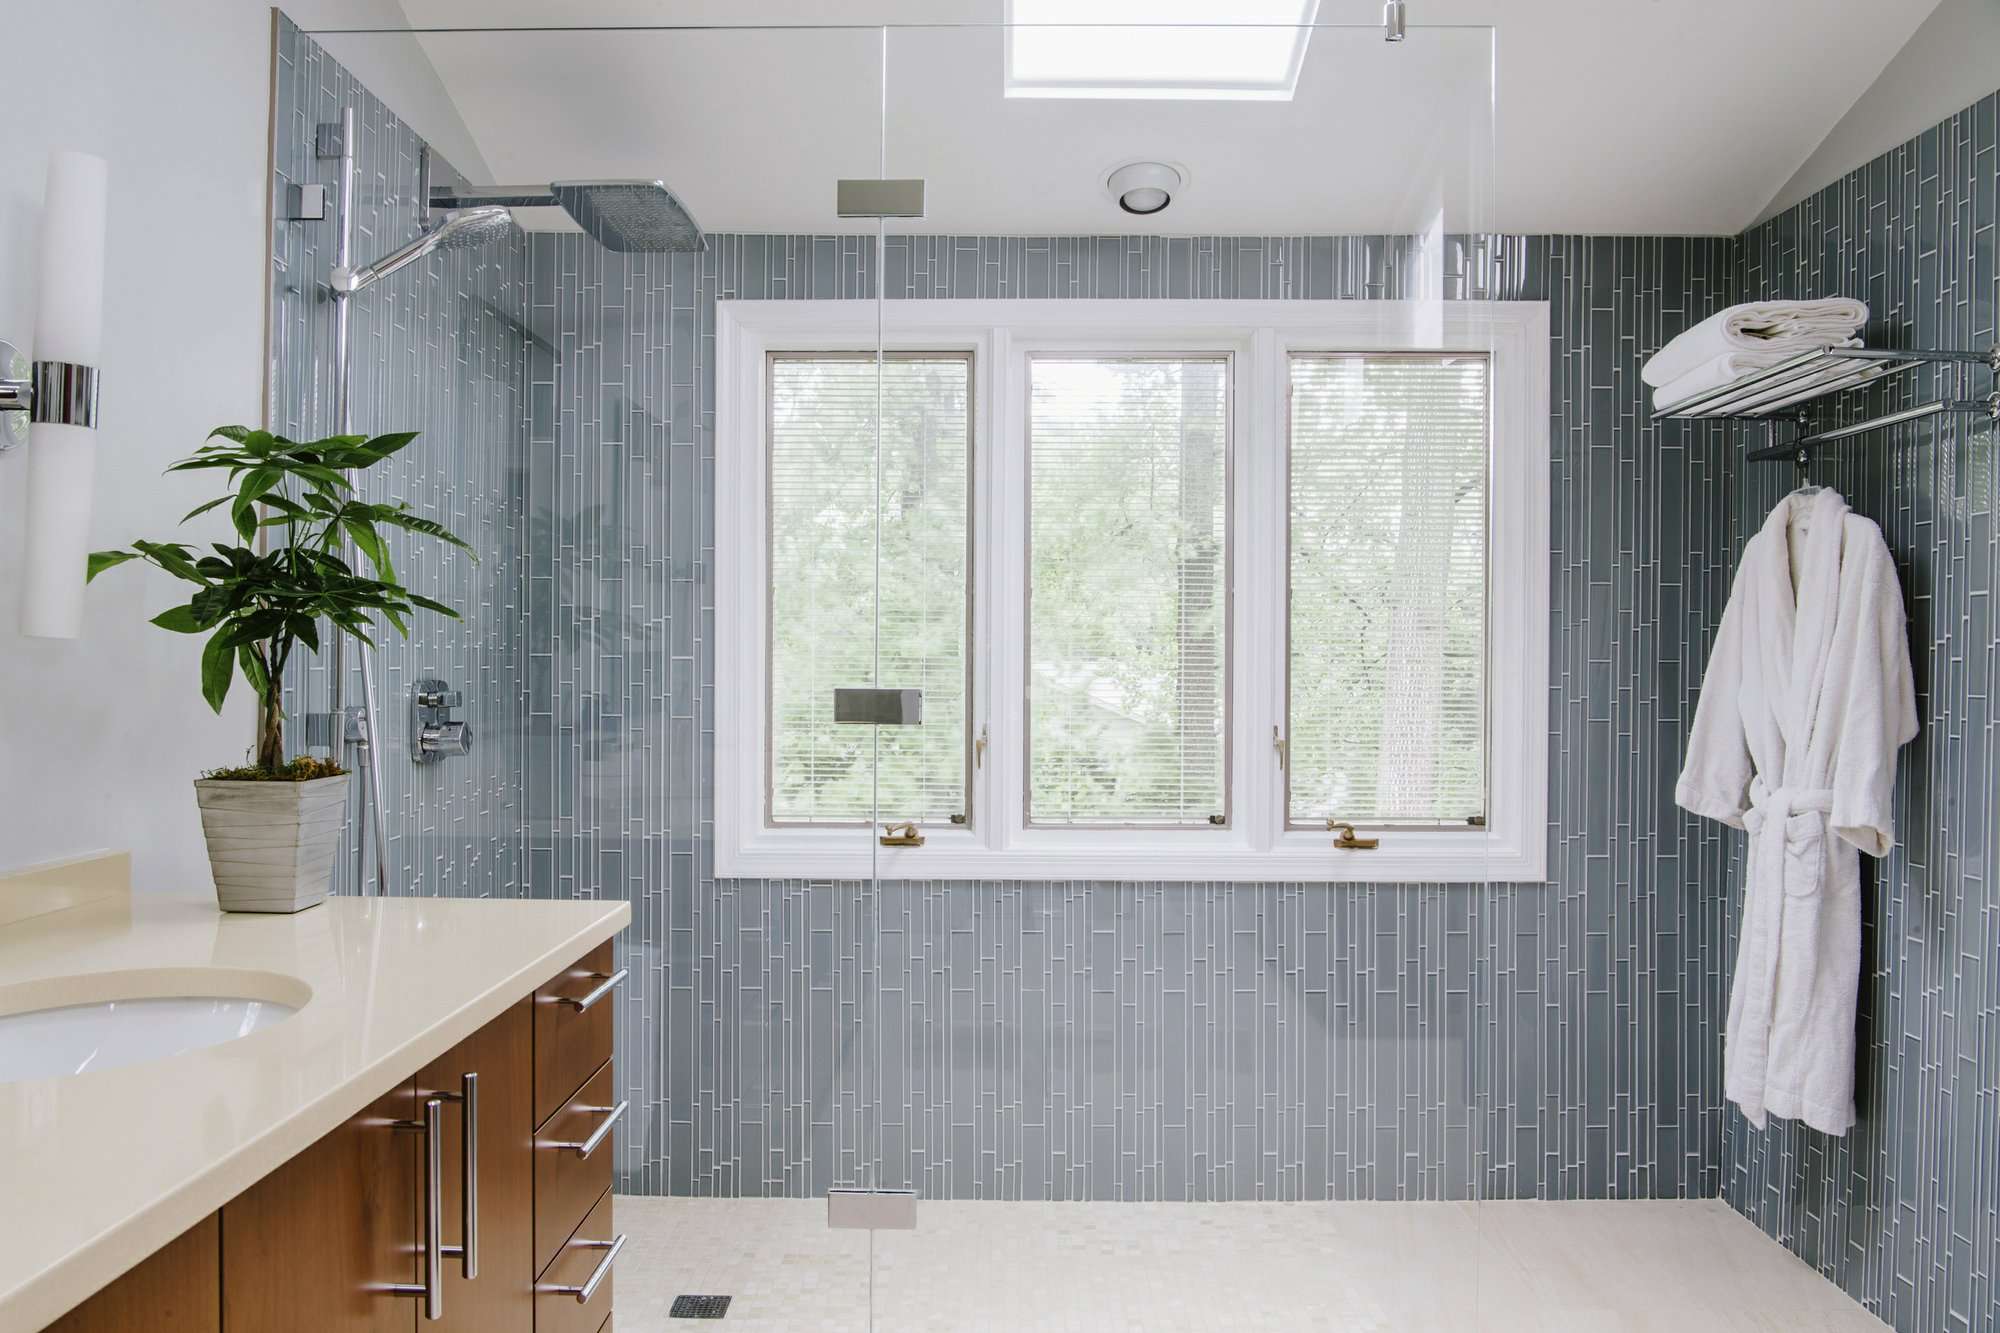 La diseñadora de interiores Nadia Subaran dice que los propietarios de viviendas cada vez más quieren duchas con mampara de vidrio en las que puedan caminar directamente sin ningún paso ni puerta, como se ve en este diseño de Aidan Design. AP